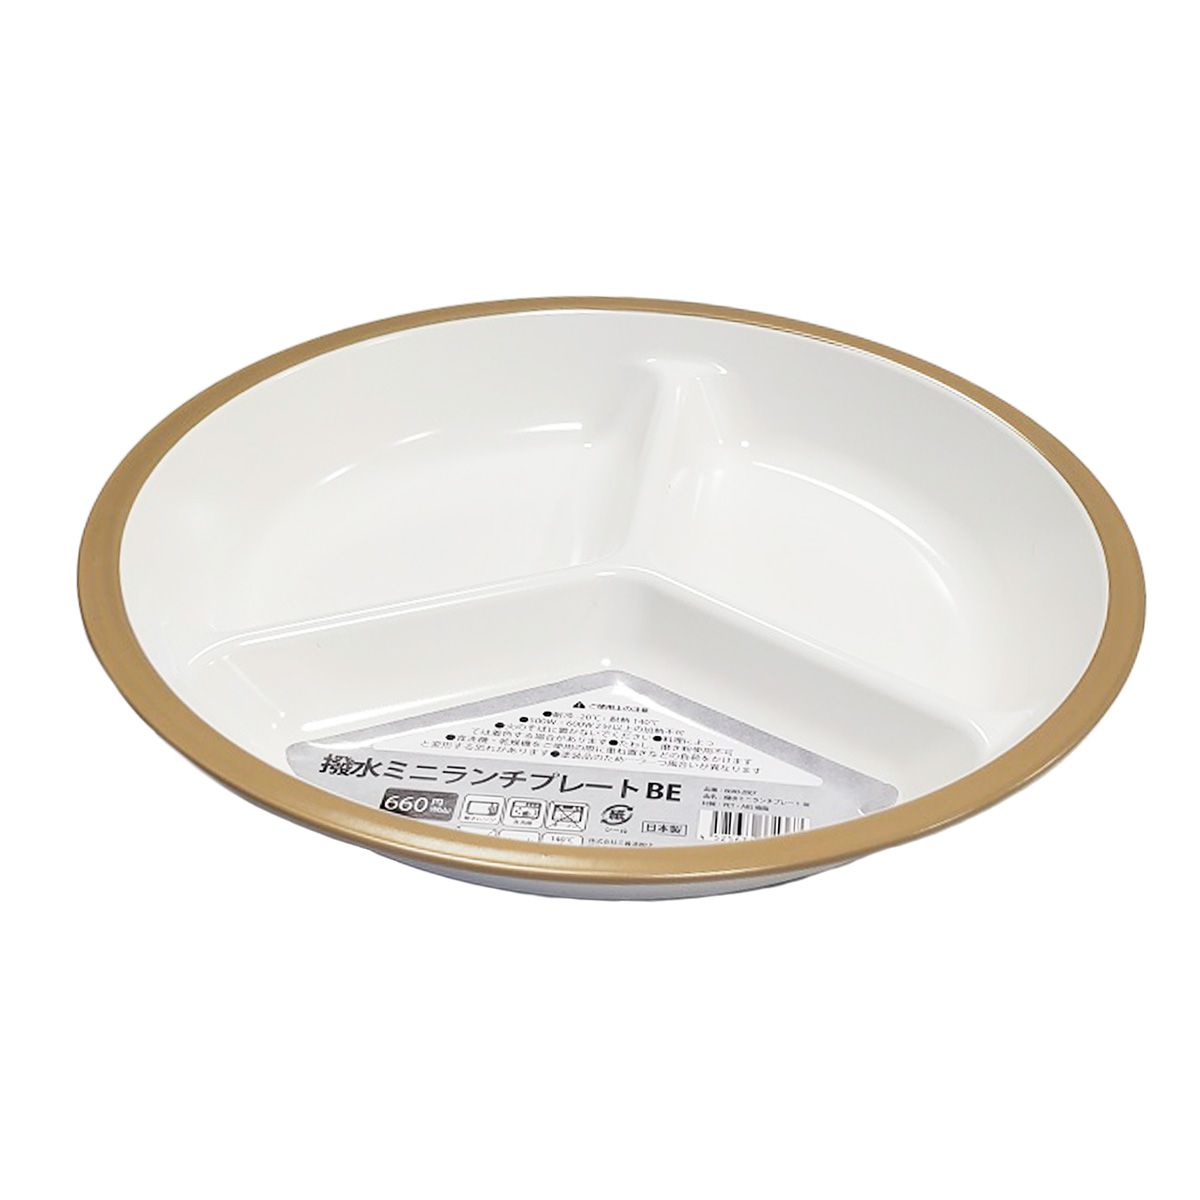 皿 仕切り皿 撥水ミニランチプレート ワンプレートご飯 ベージュ 9001/342028